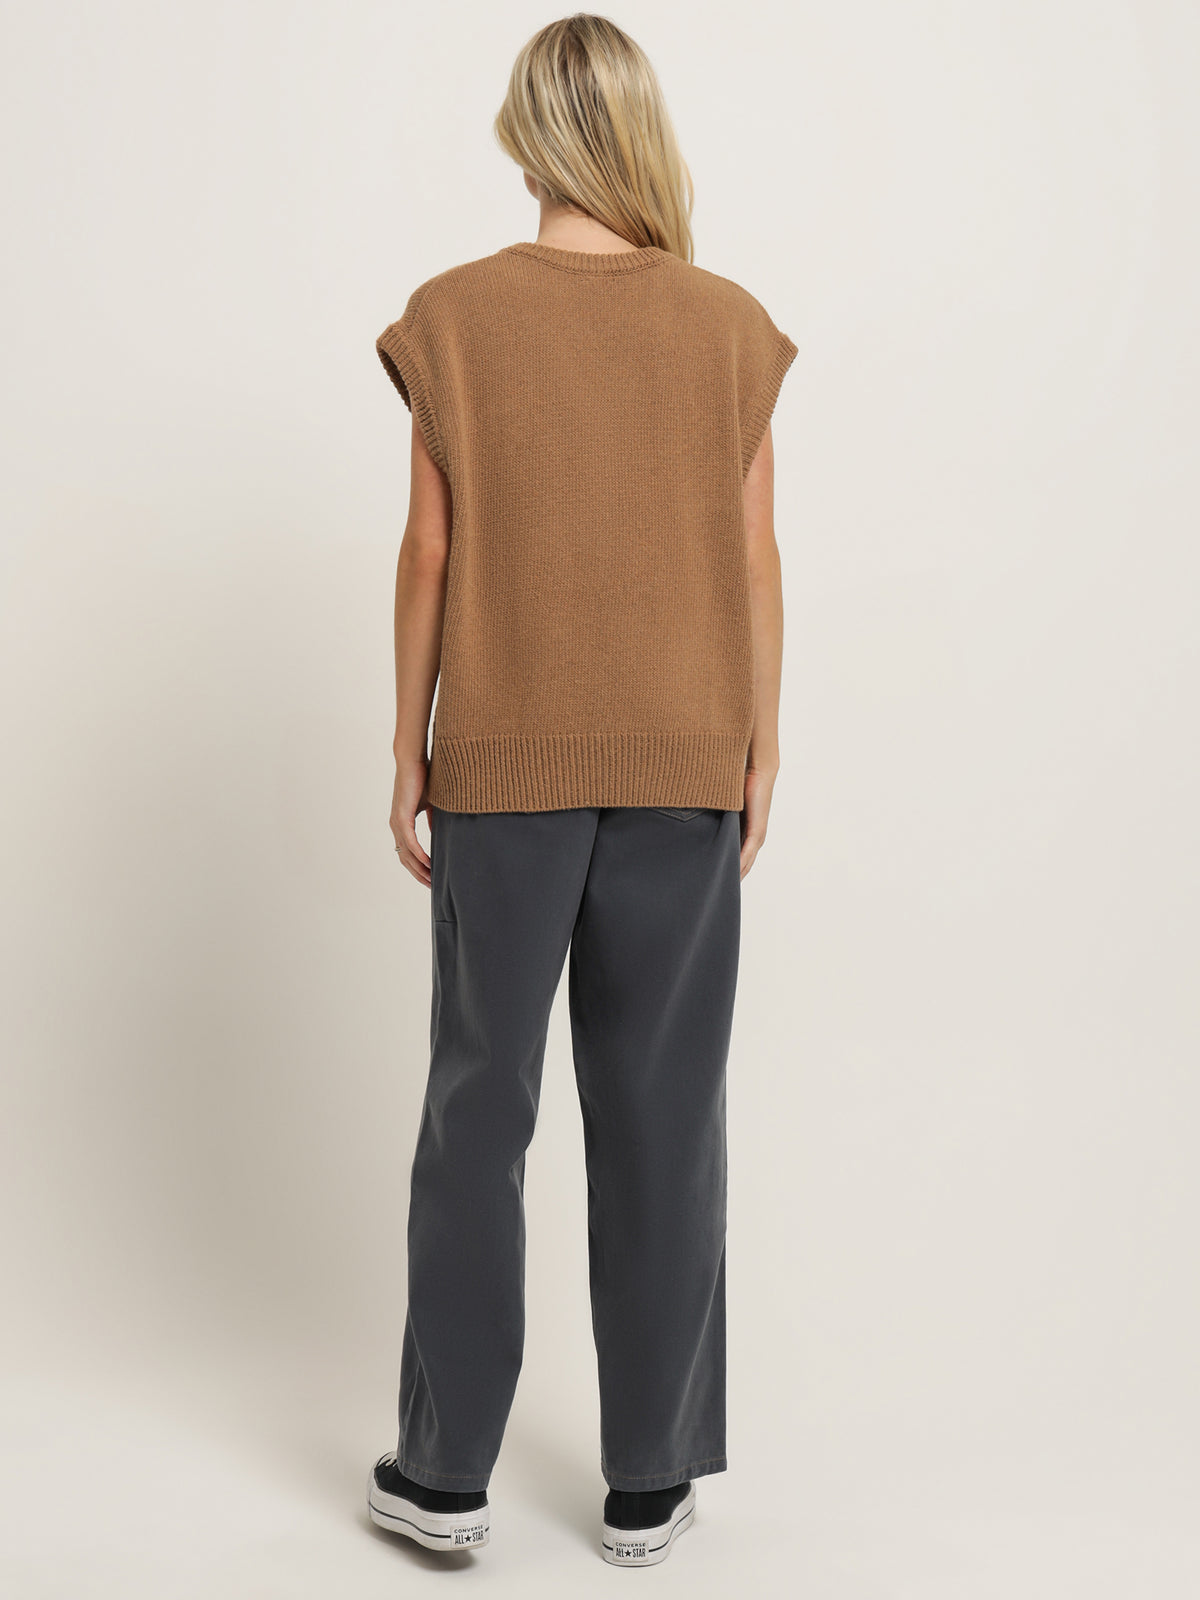 Velencia Knit Vest in Bronze Brown